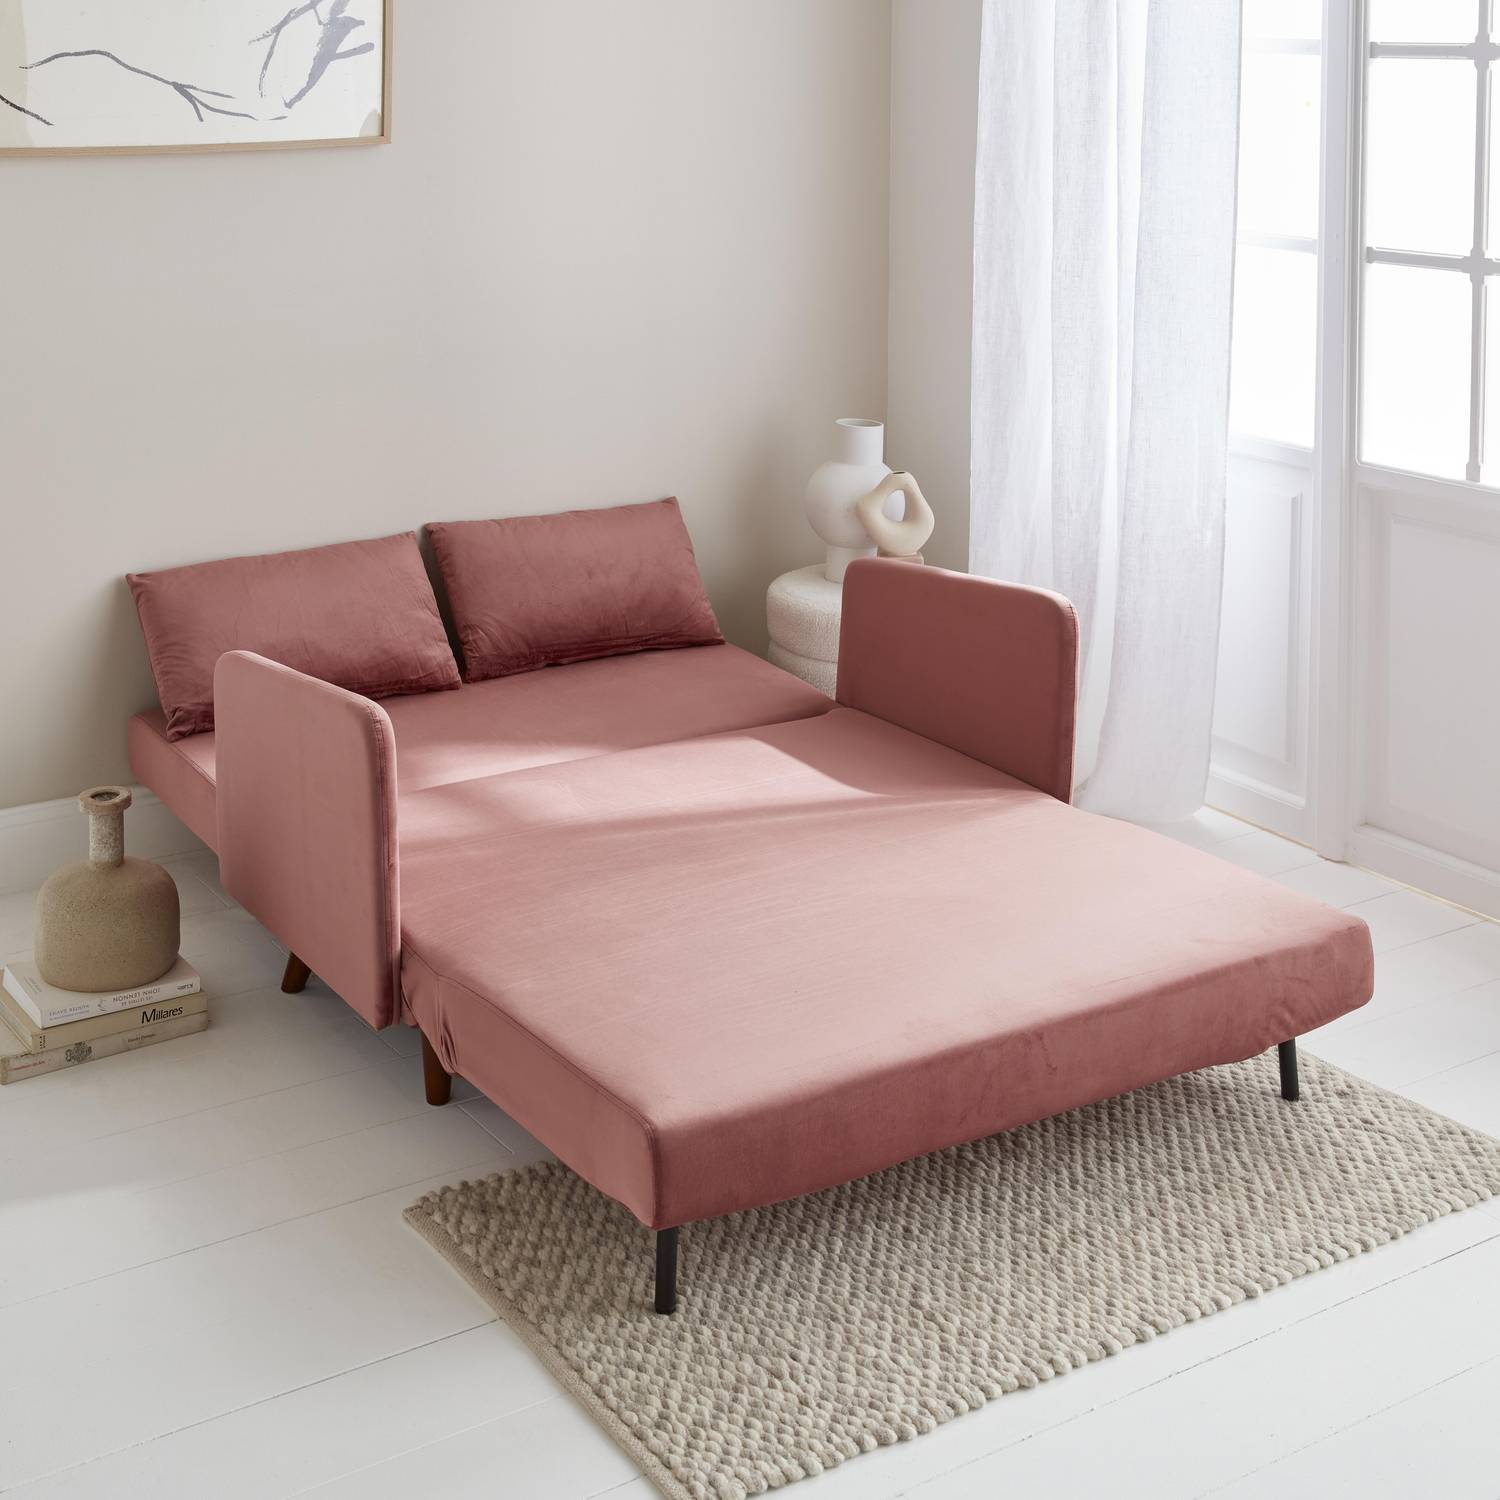 Sofá cama de terciopelo - Panam - escandinavo de 2 plazas, patas de madera oscura, rosa, asiento de banco, respaldo reclinable Photo2